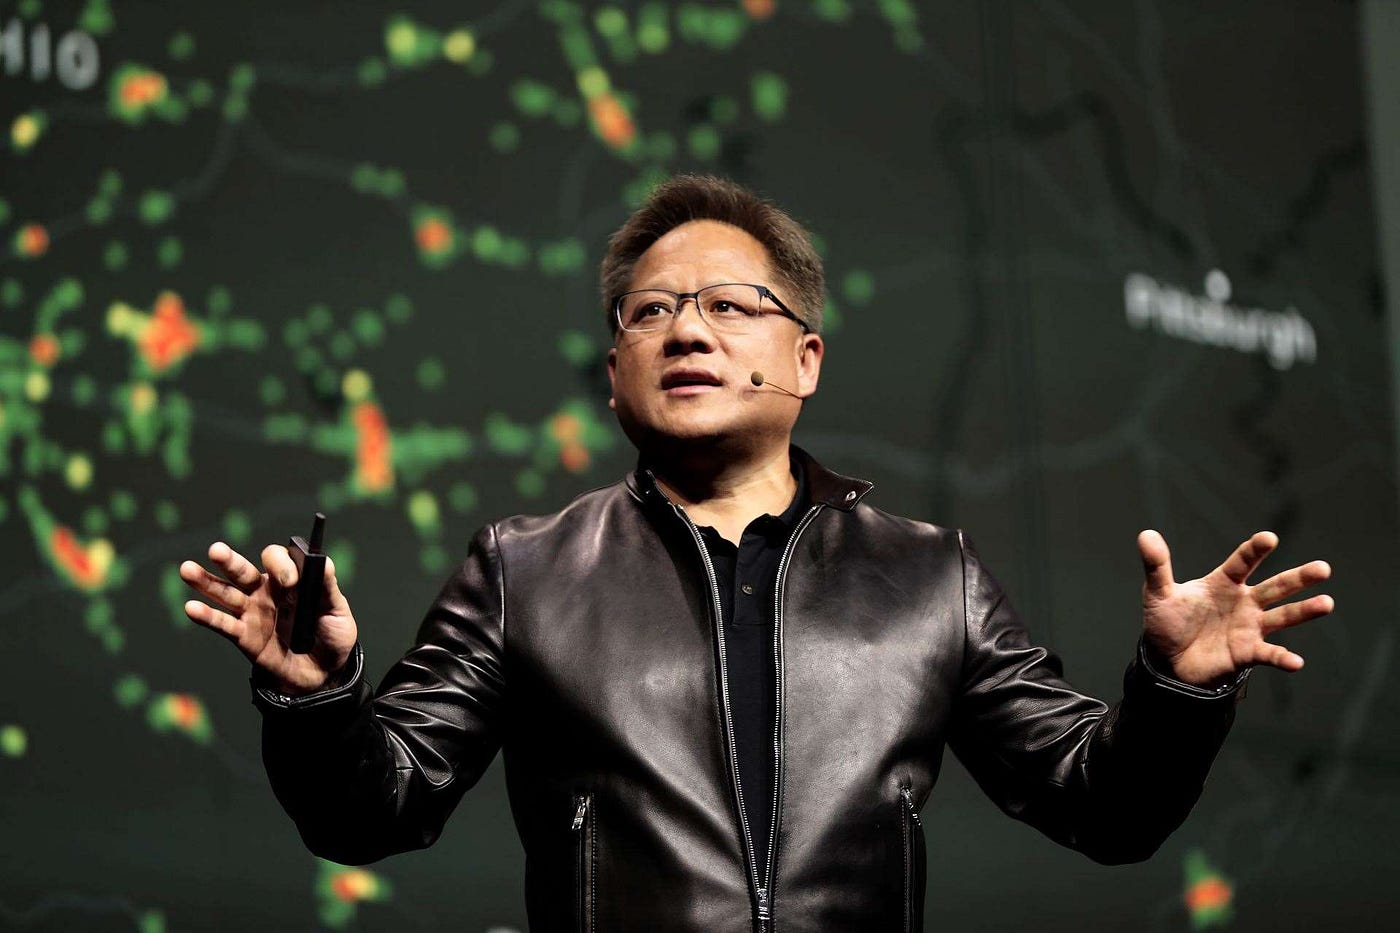 En dixième position de ce Top10, Jensen Huang, cofondateur et PDG de Nvidia, qui s'est enrichi de 29,8 milliards, établissant sa fortune à 43,6 milliards de dollars.